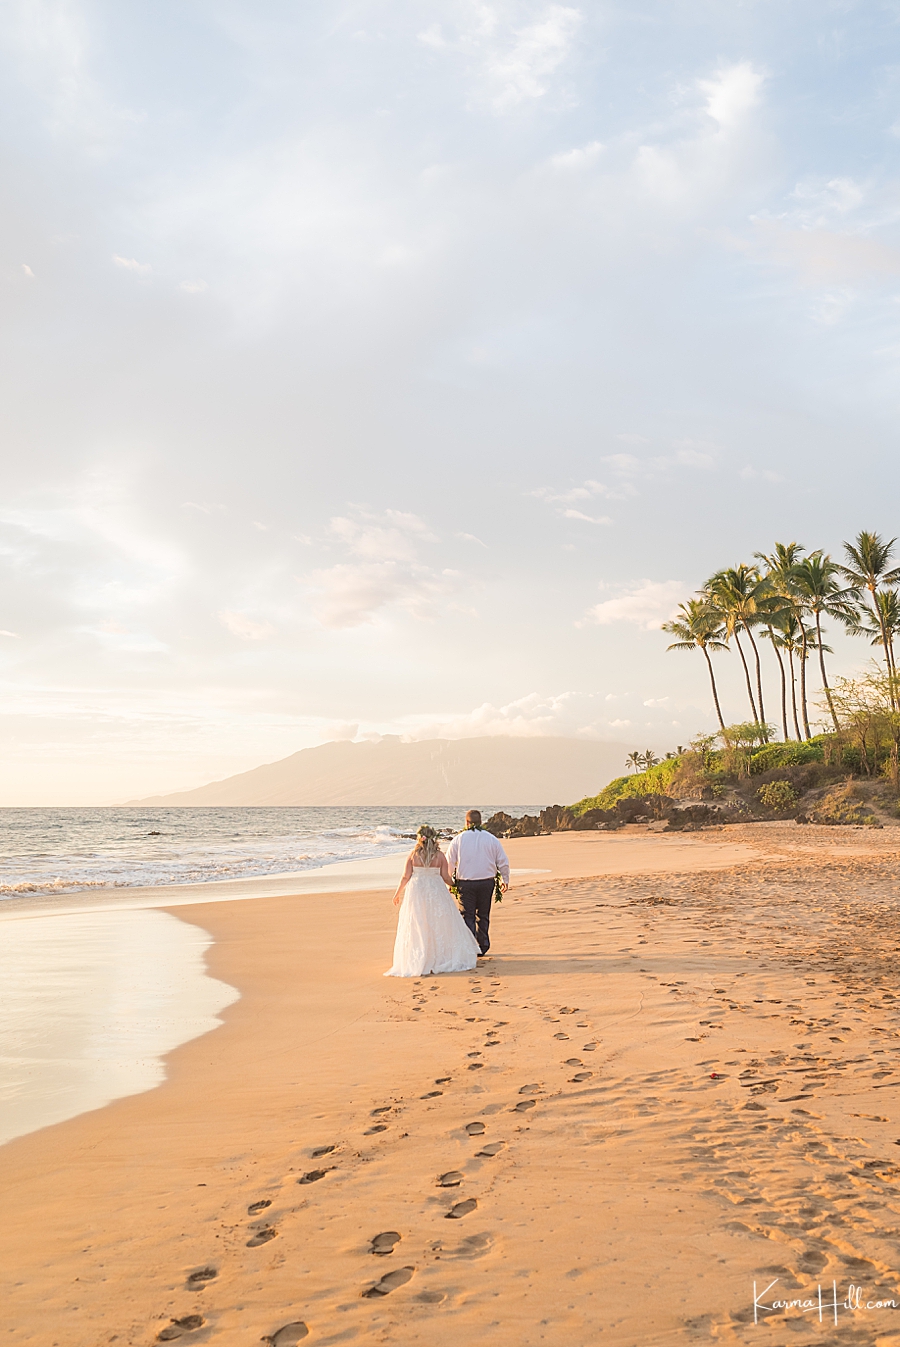 Maui Beach Wedding Packages
